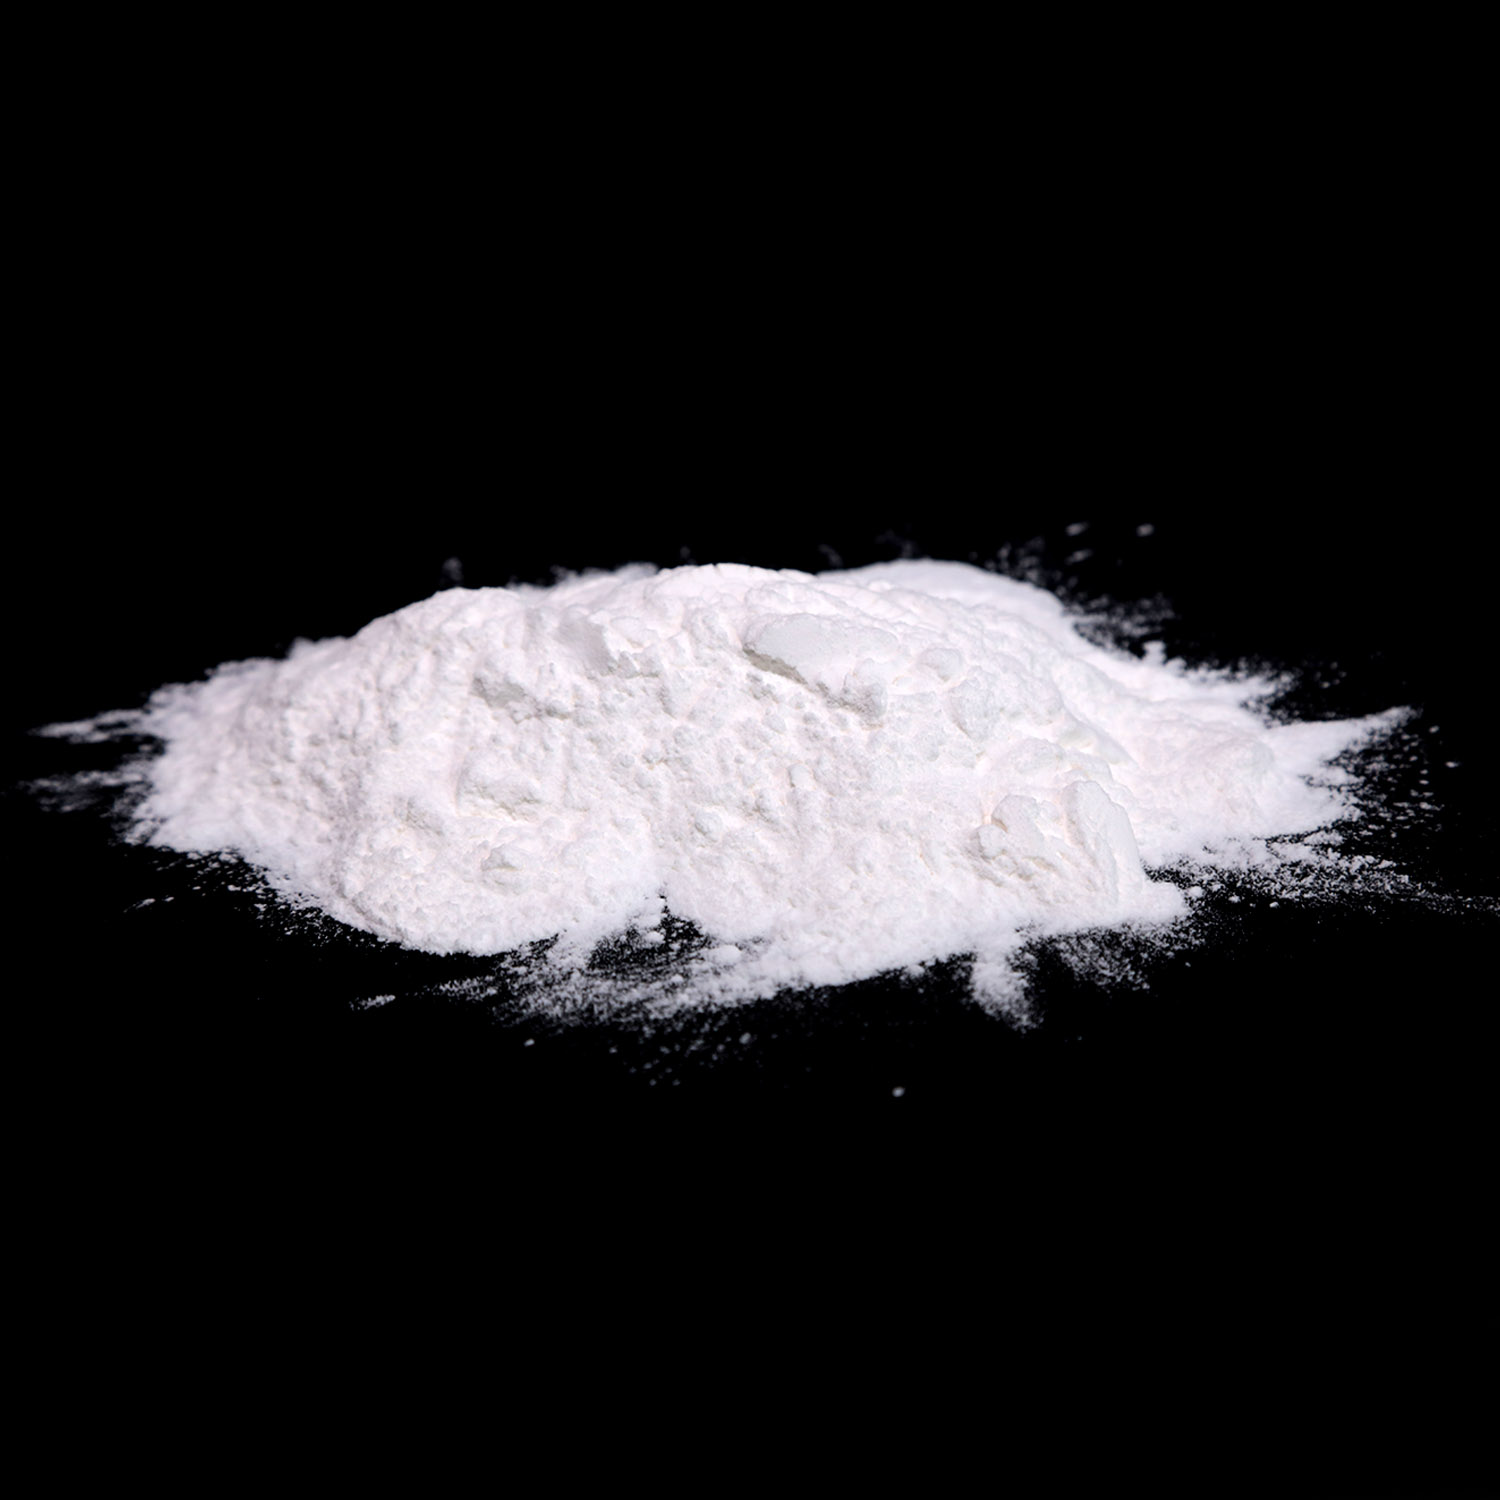 Producto de alta calidad del intermedio farmacéutico 2- (2-clorofenil) -2-nitrociclohexanona CAS 2079878-75-2 con buen precio Alta pureza